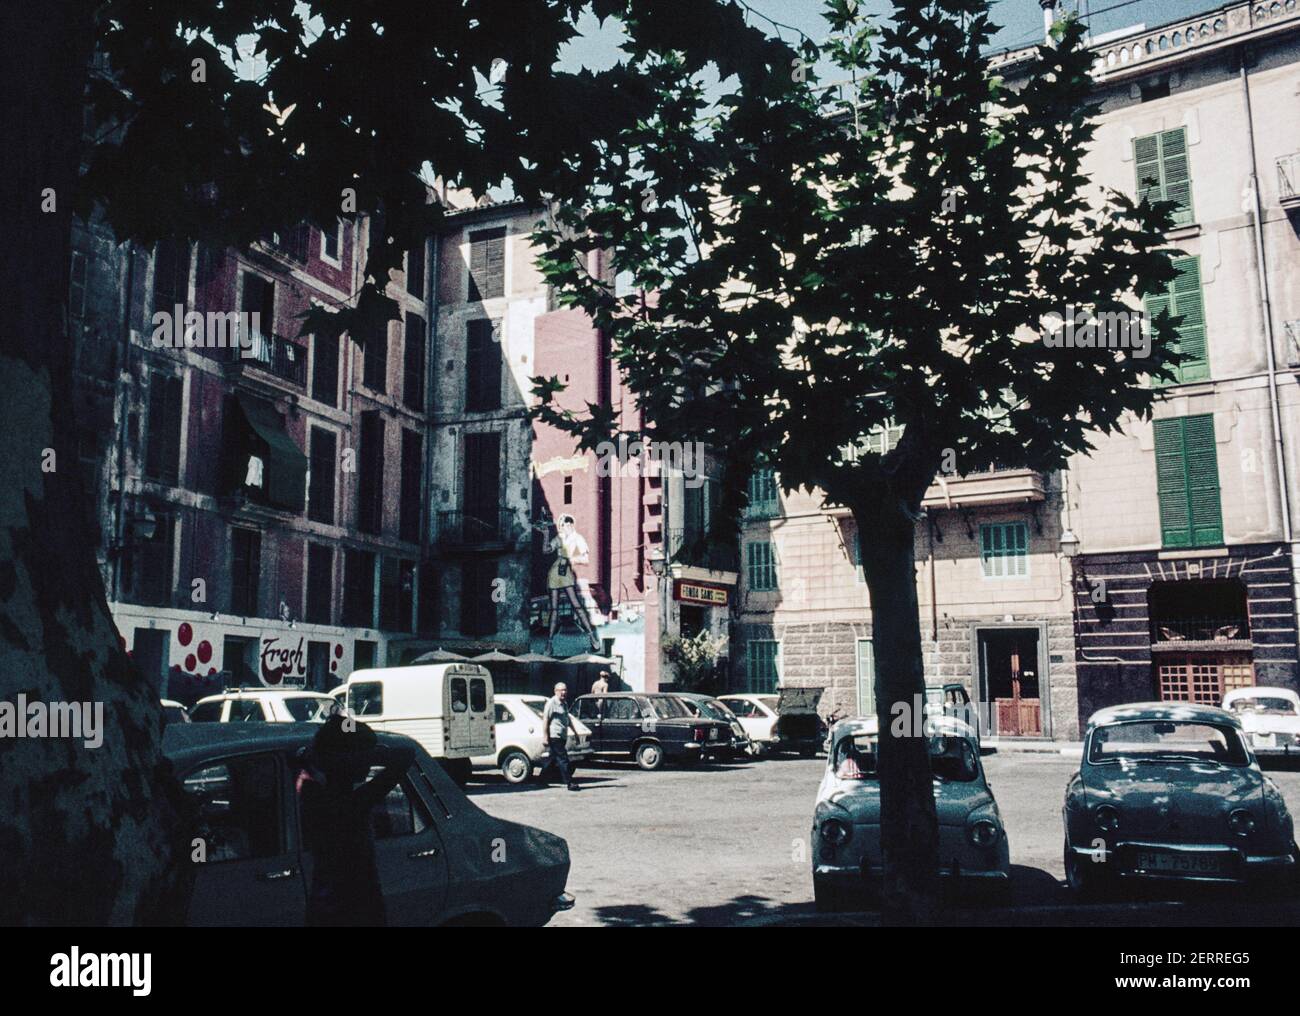 Archivscan von Palma Mallorca ca. 1975. Placa de la Drassana, Palma mit geparkten Autos und Café. Eine pastiche amerikanische Graffiti Stil Wandmalerei. Stockfoto